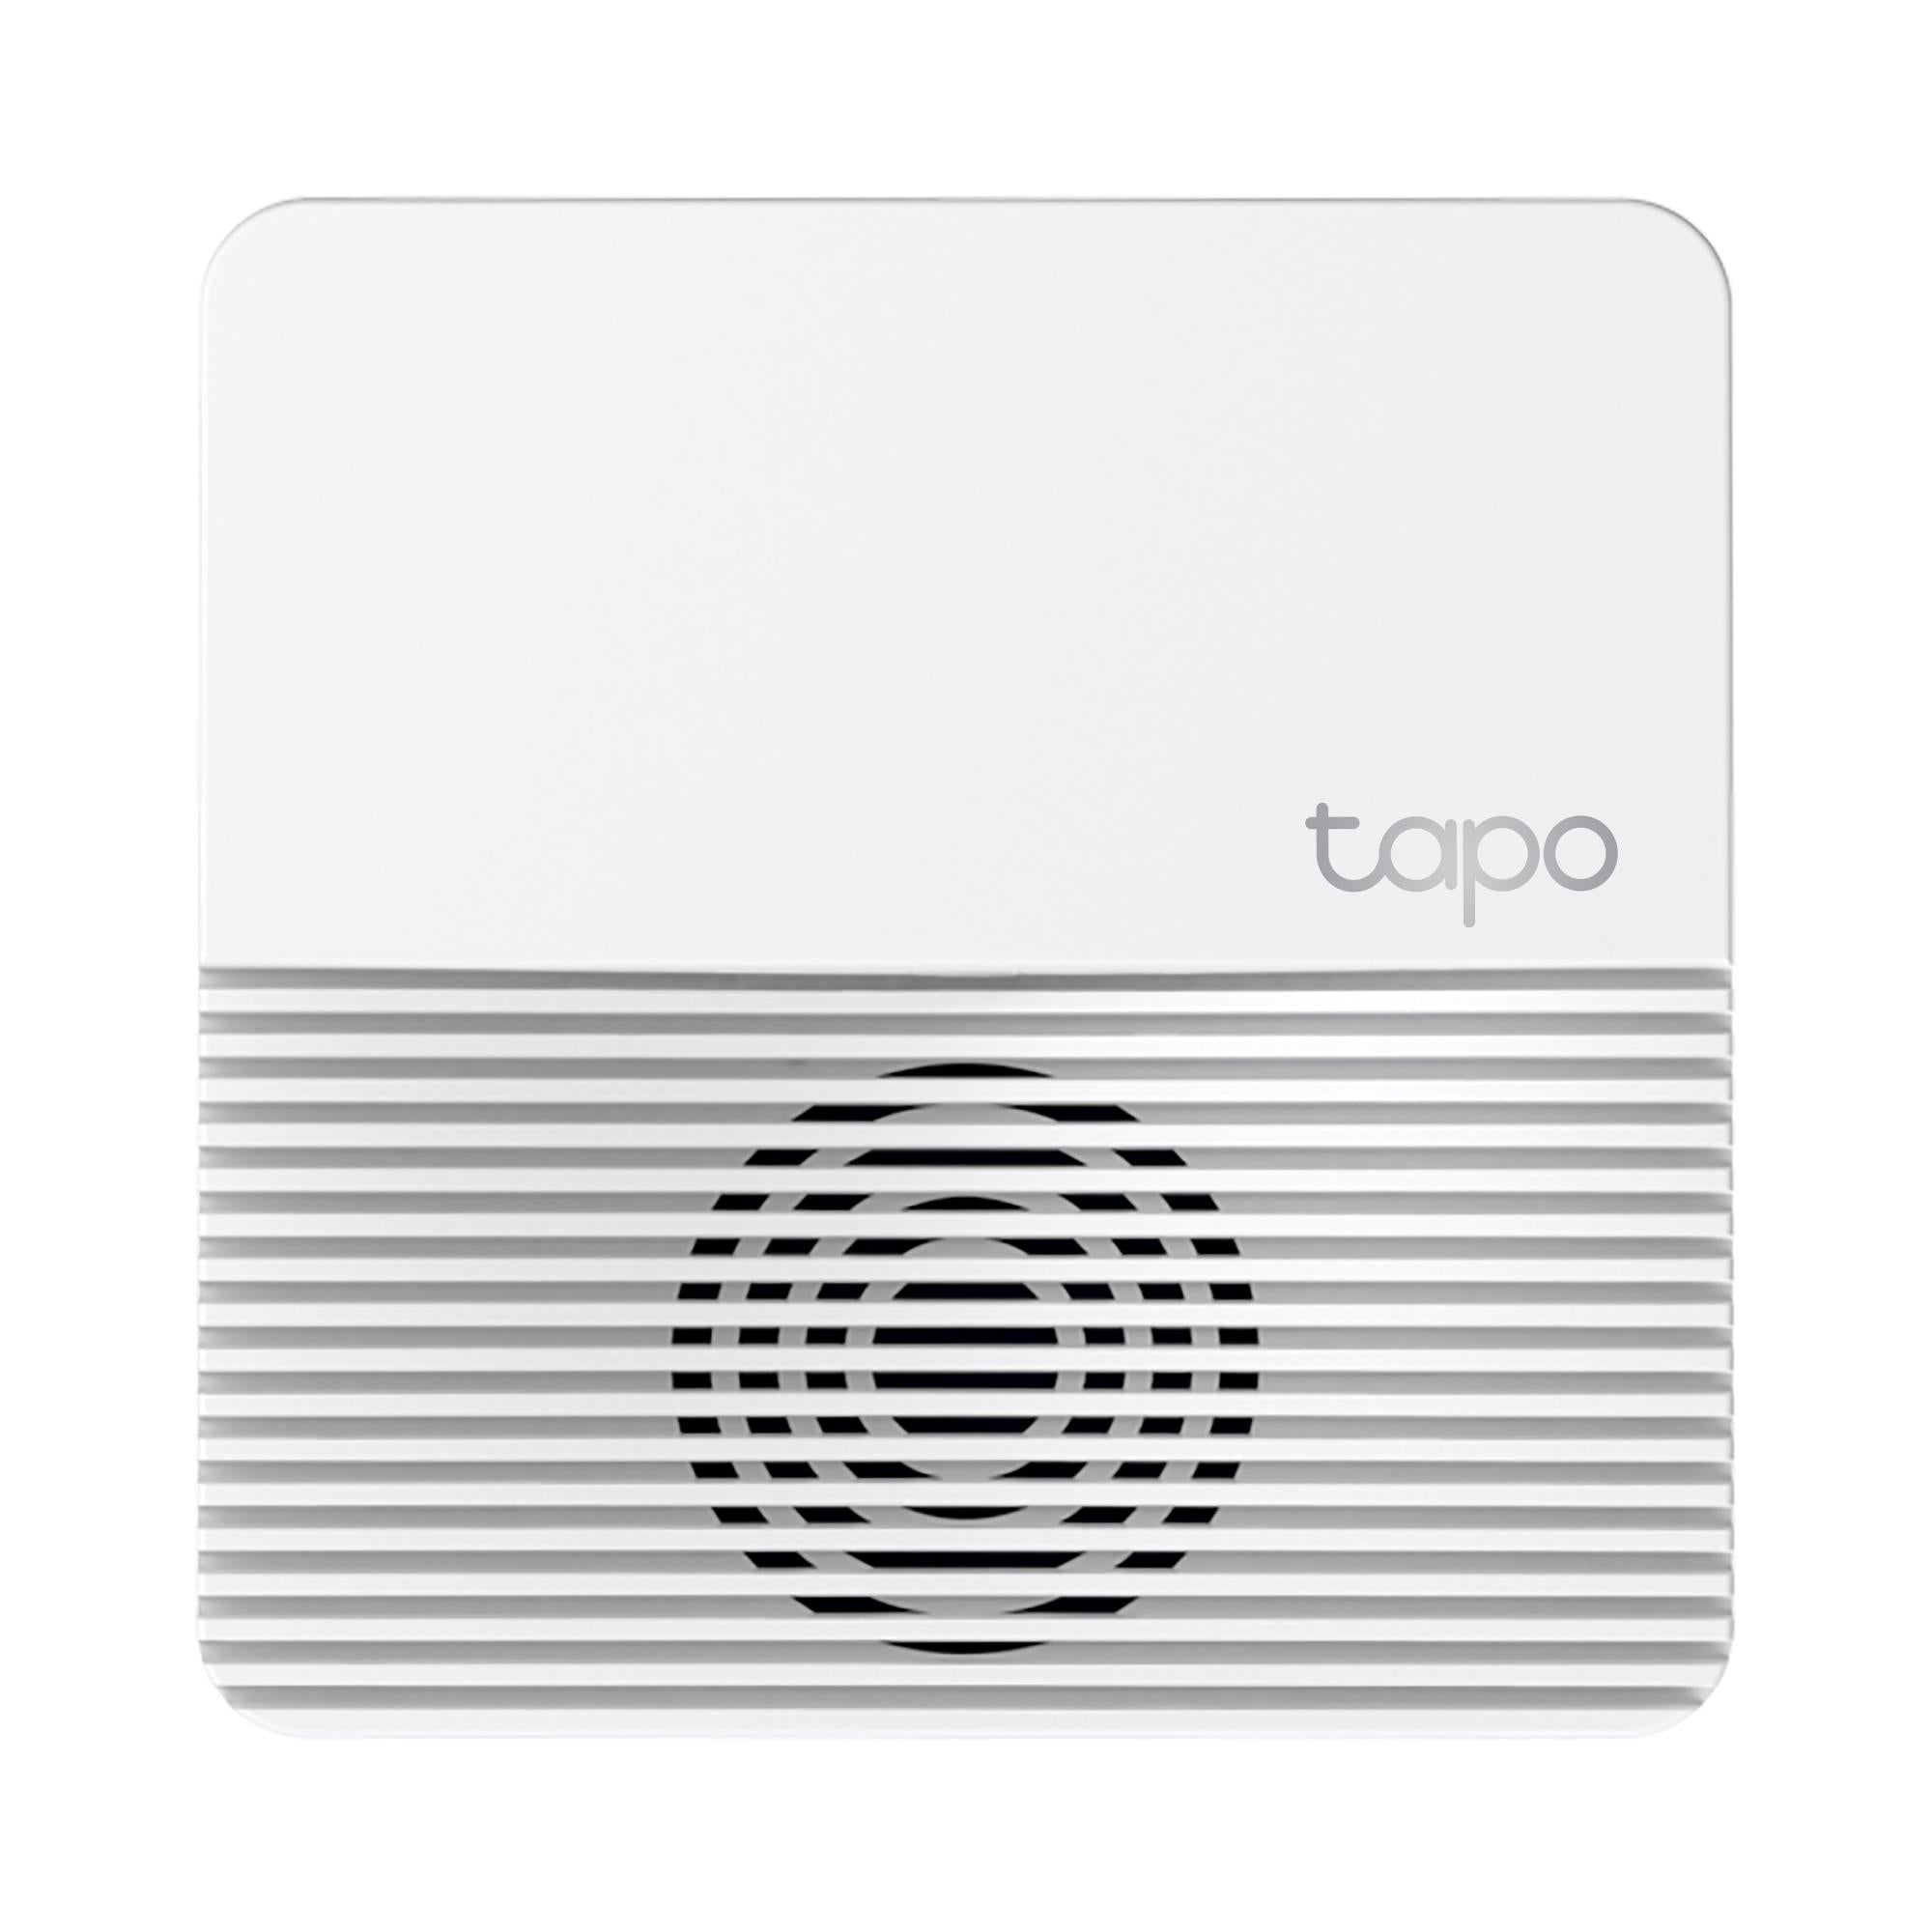 TP-Link Tapo Smart Hub - JB Hi-Fi